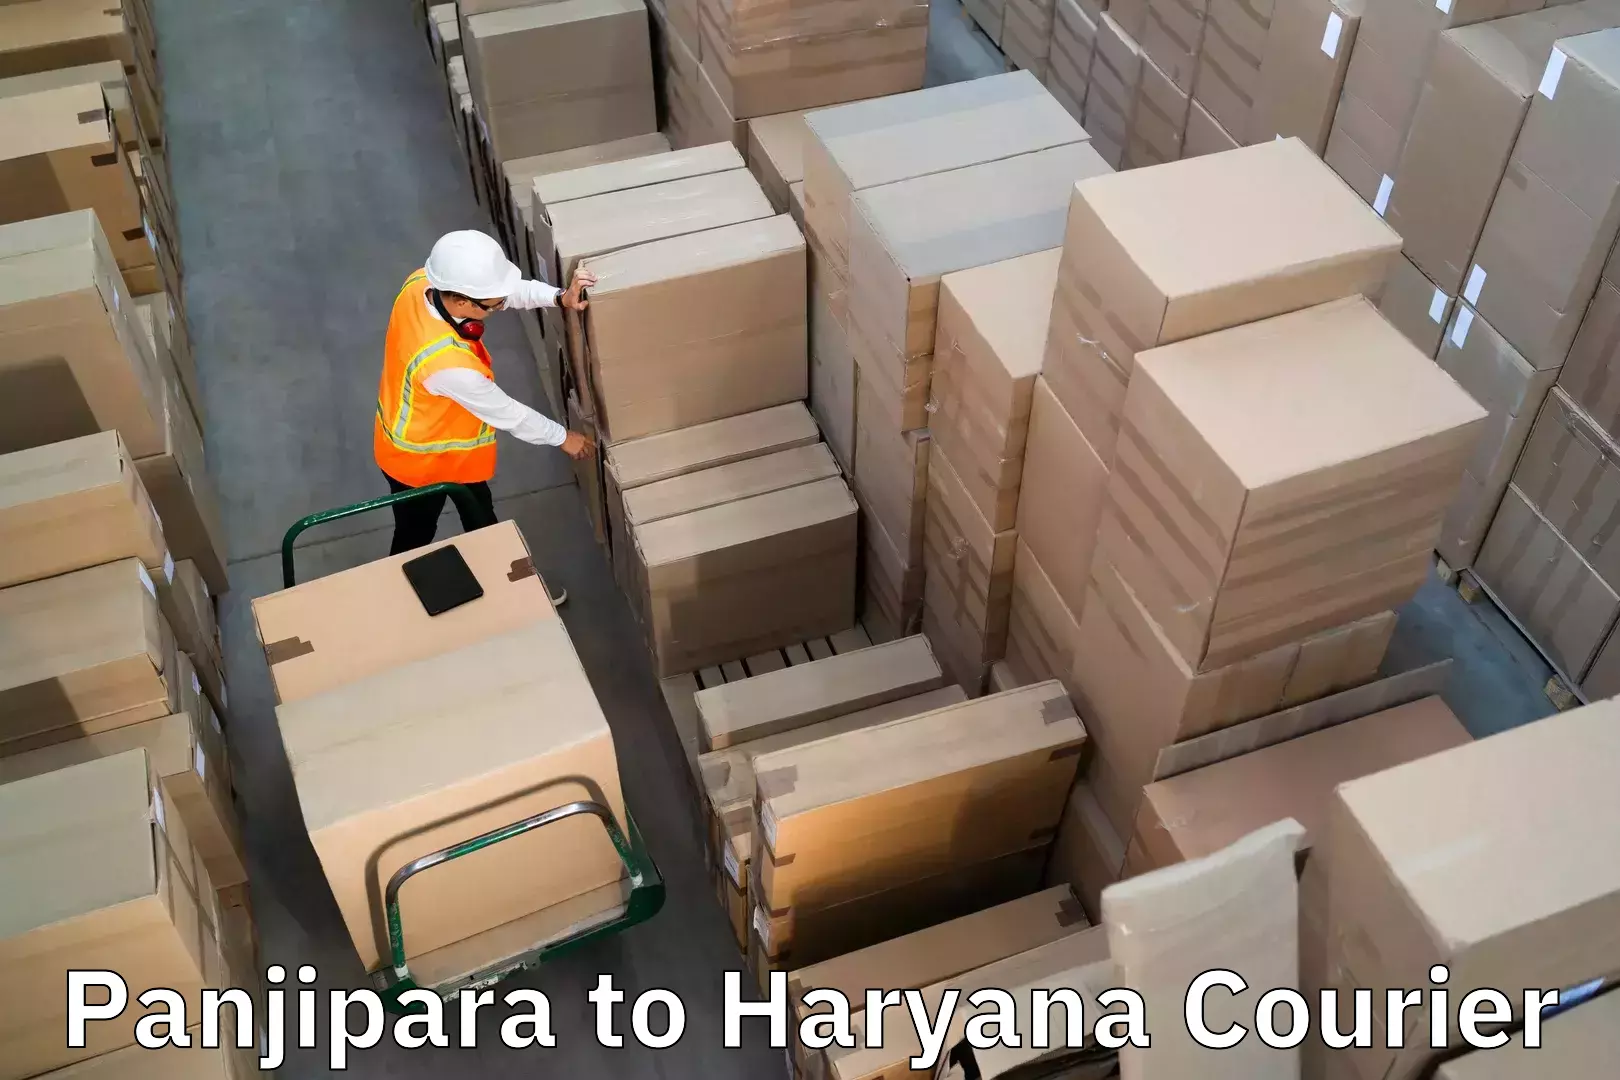 Baggage shipping calculator Panjipara to Chaudhary Charan Singh Haryana Agricultural University Hisar